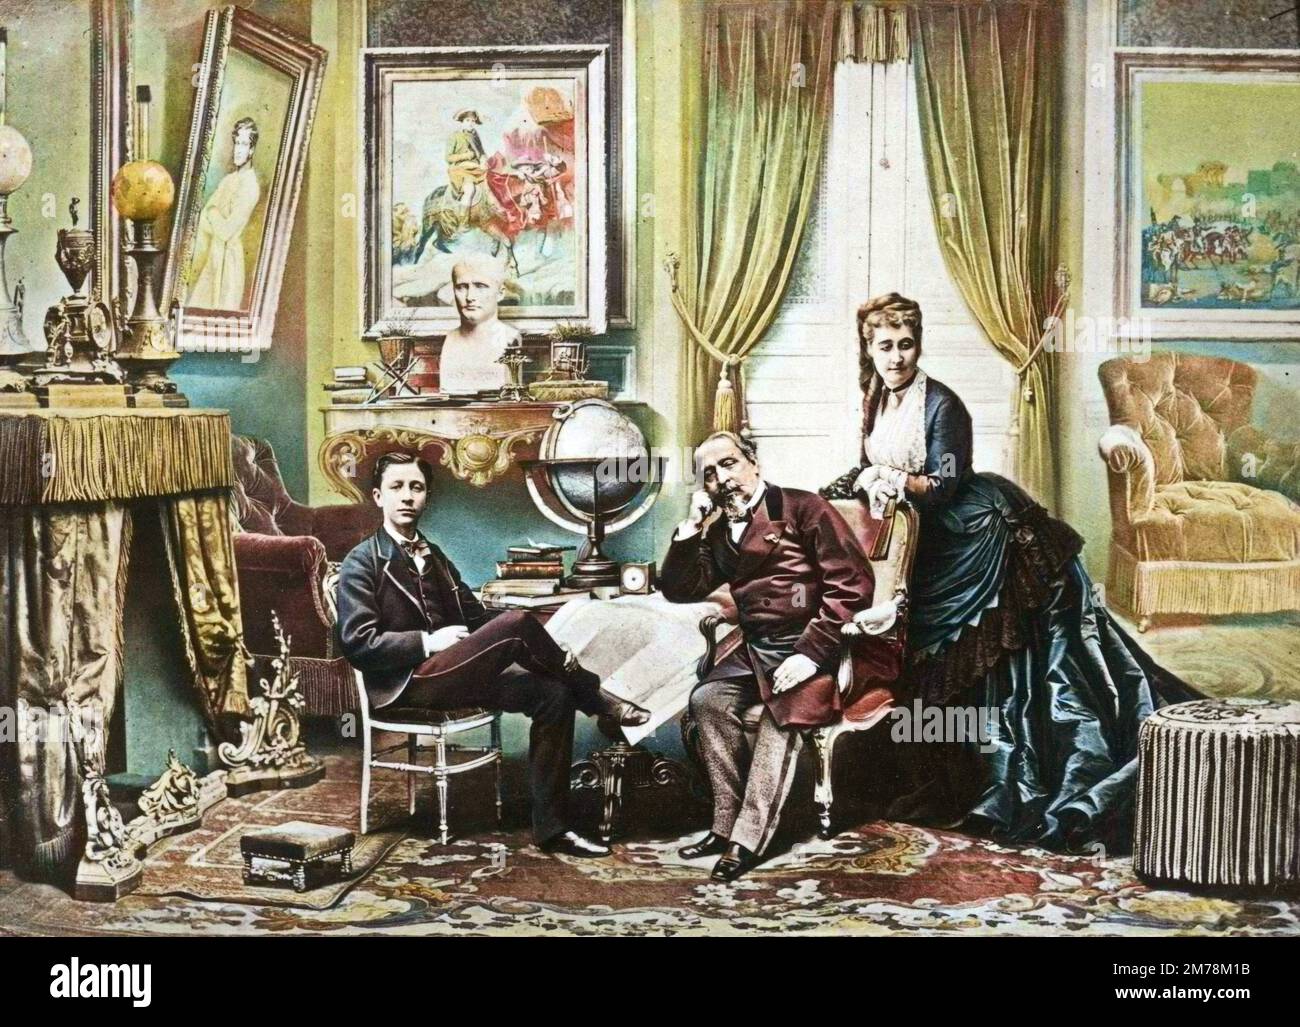 L'ex empereur français Napoléon III avec sa femme l'imperatrice Eugenie et leur fils le prince impérial a Camden place, Chislehurst en 1872 (ils sont en exil en Angleterre) - Empereur Napoléon III avec l'impératrice Eugénie et Louis-Napoléon Bonaparte (1856-1879), Prince impérial, Camden place, Chislehurst en 1872 Banque D'Images